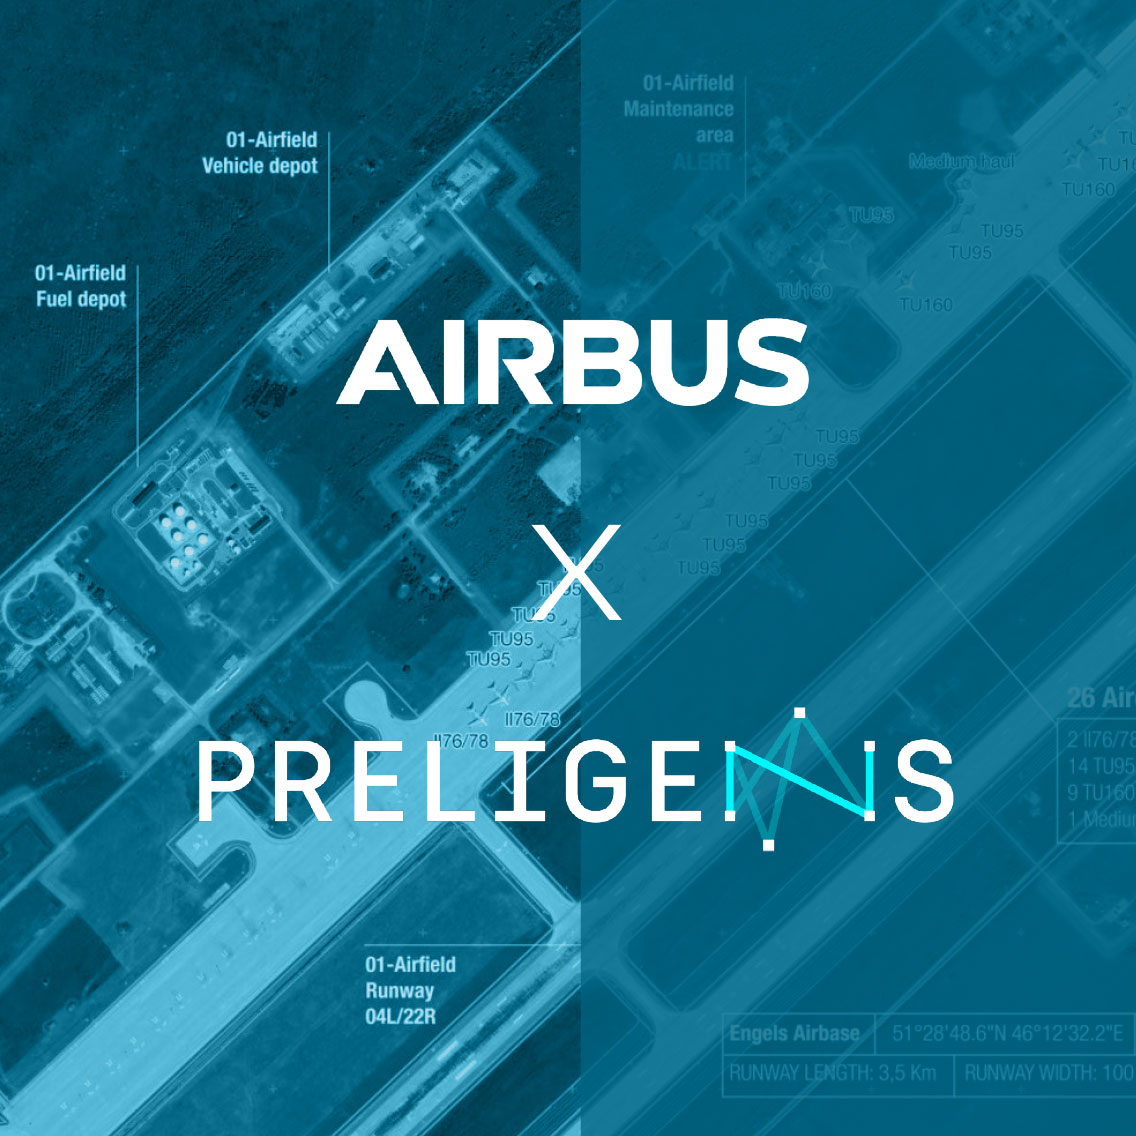 Nouvelle solution de surveillance des sites stratégiques développée par Airbus et Preligens